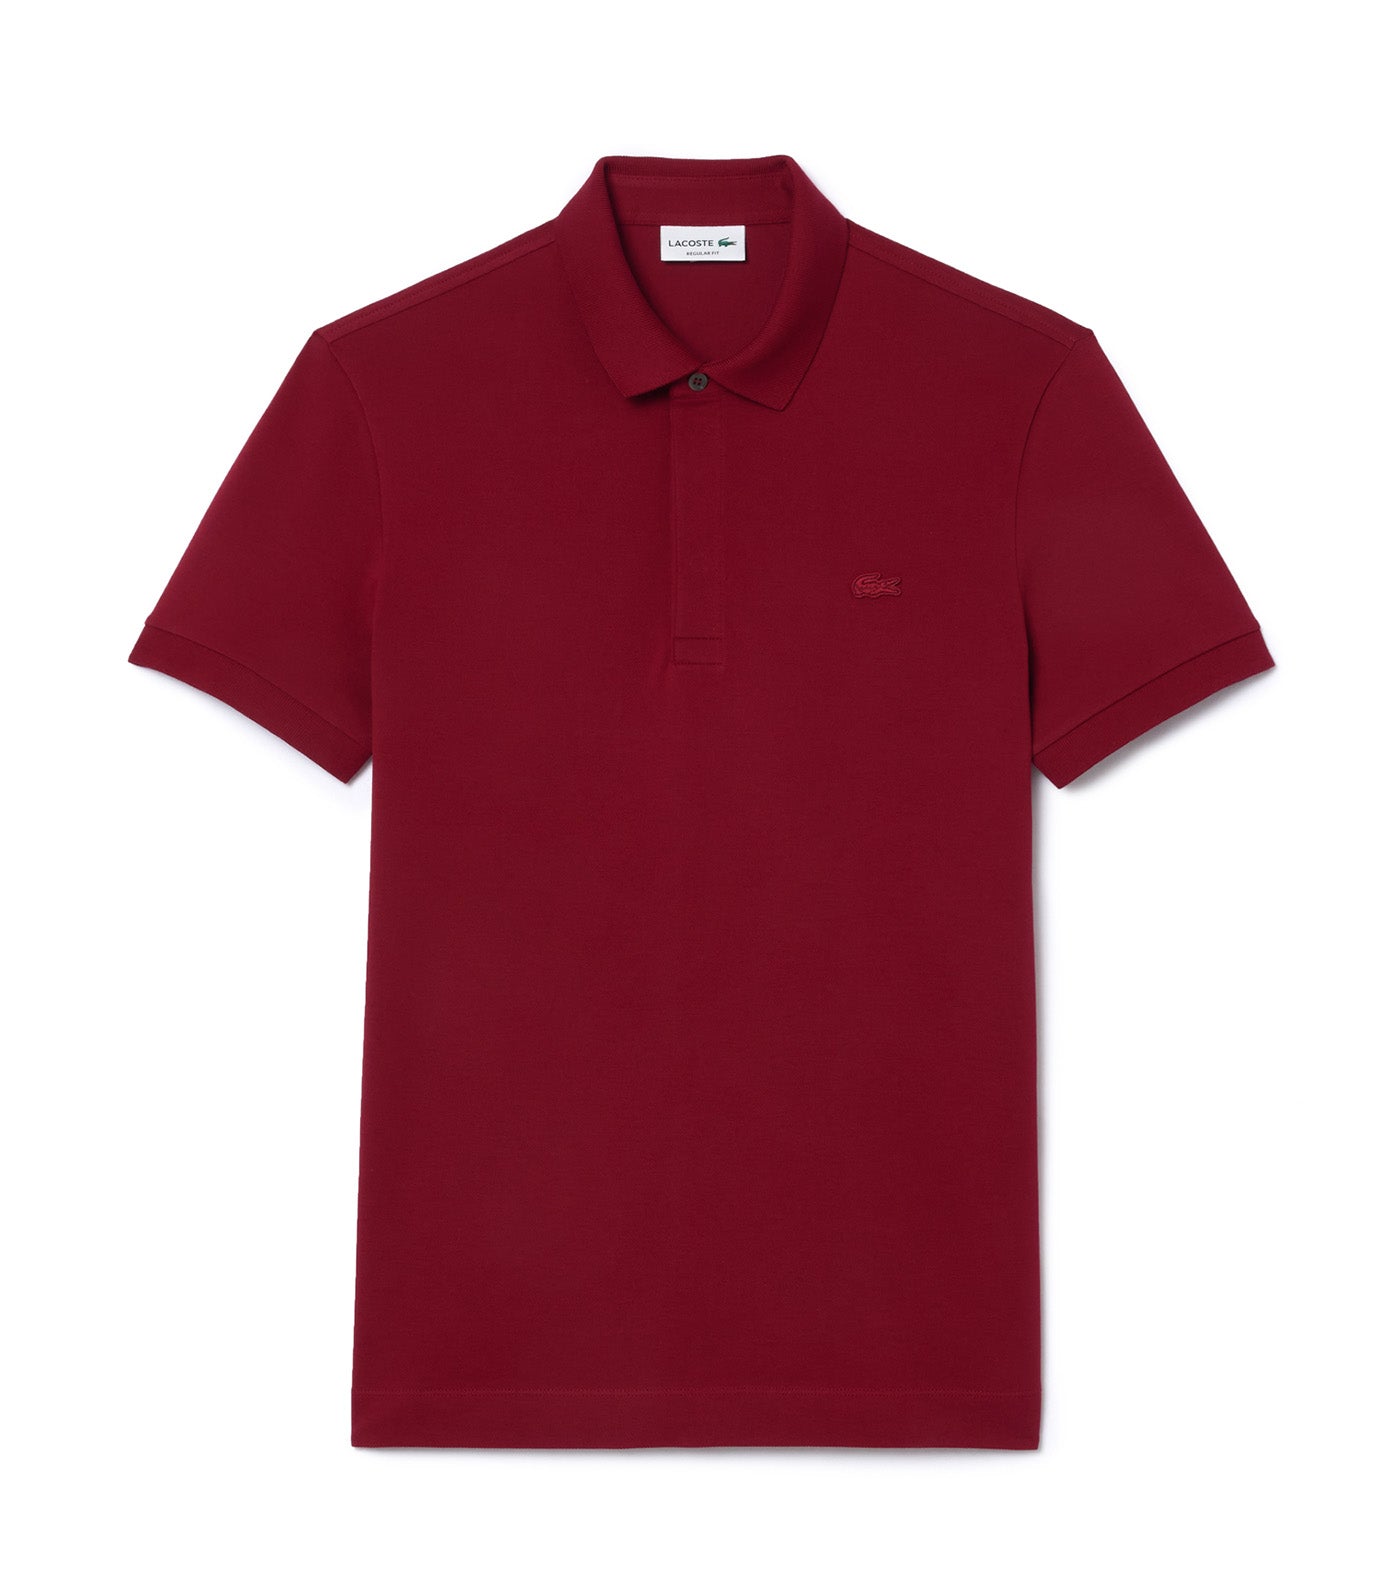 Men's Lacoste Paris Polo Shirt Regular Fit Stretch Cotton Piqué Bordeaux